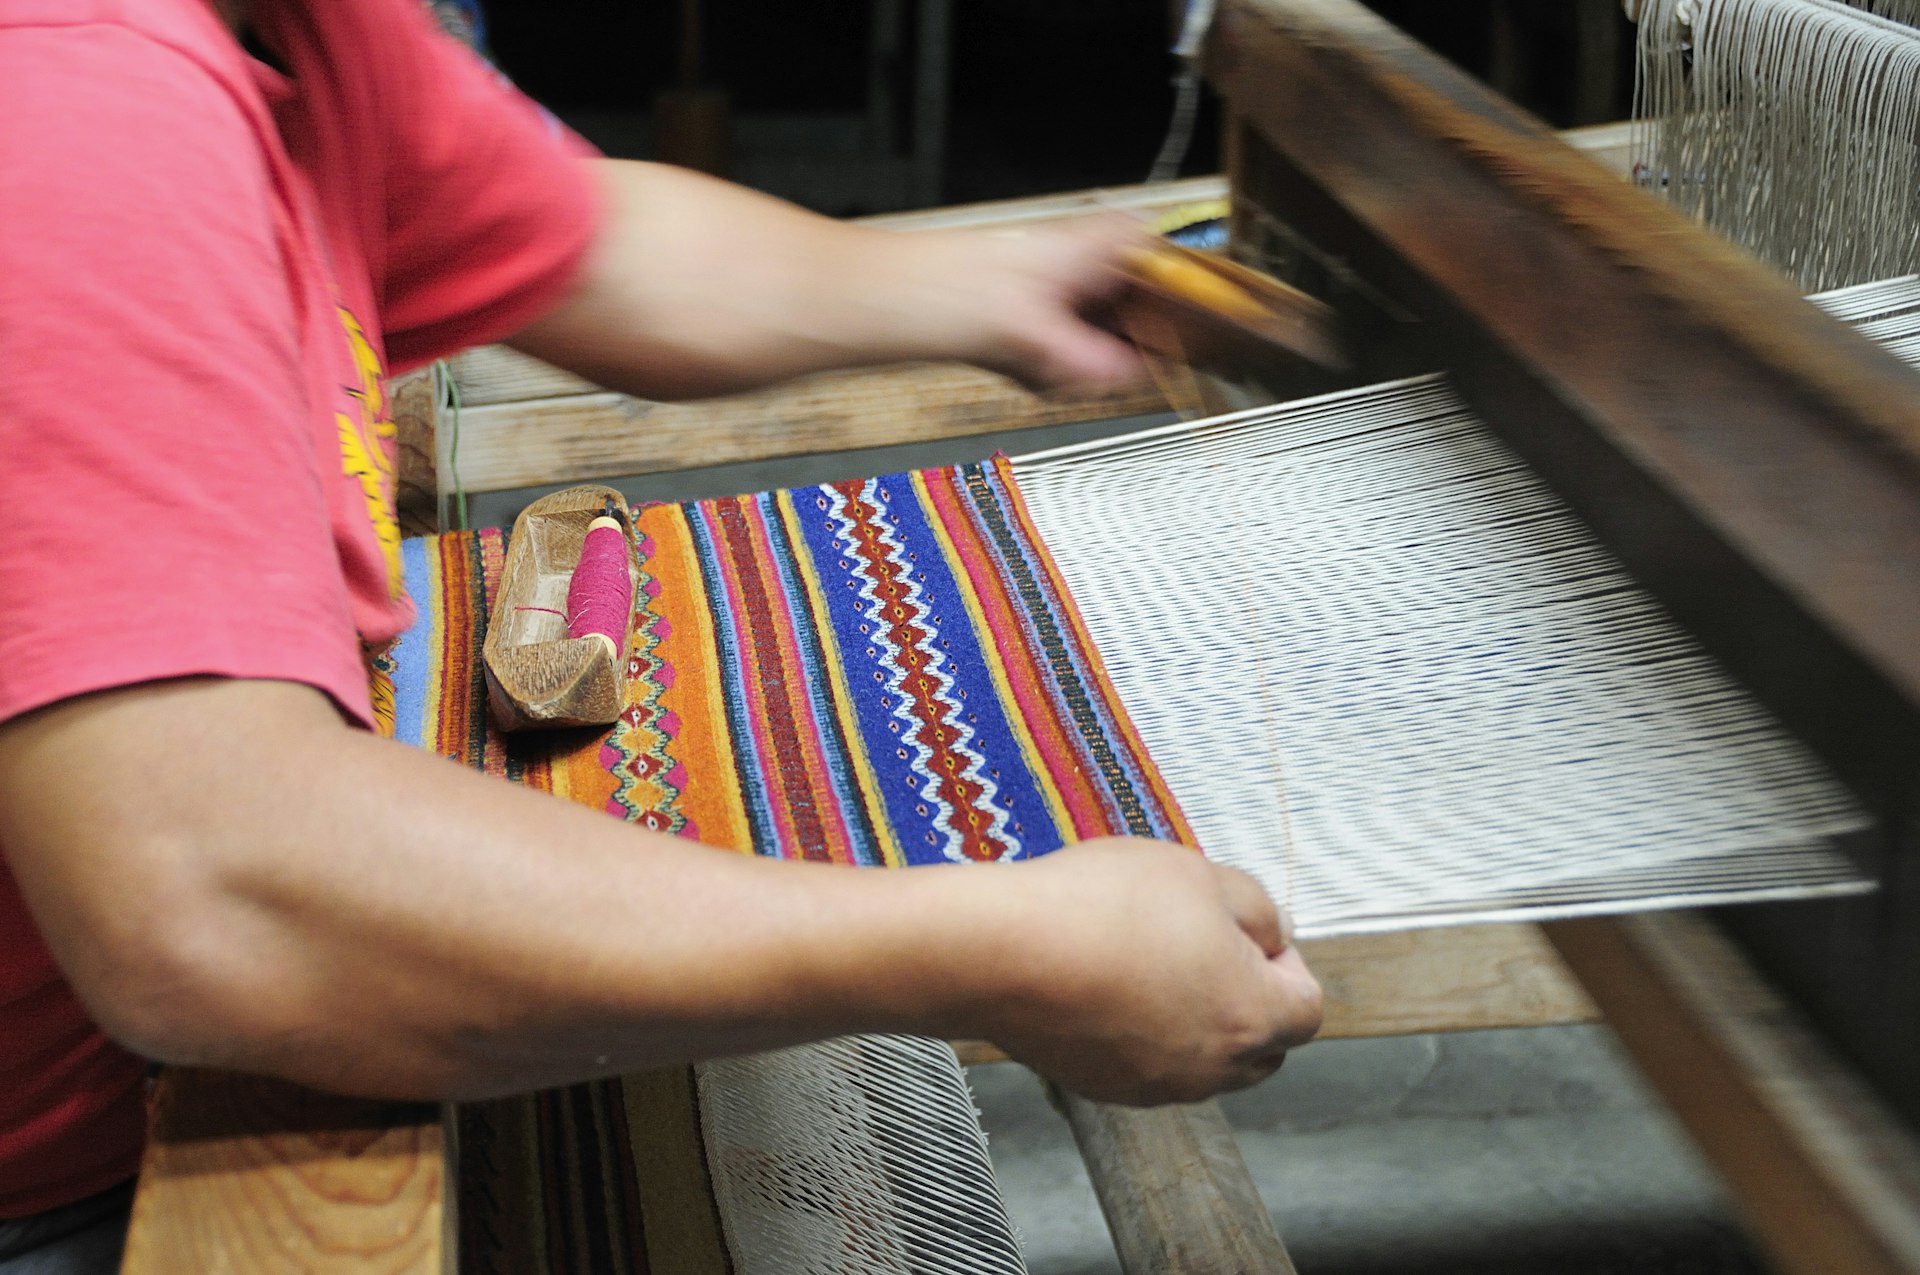 Carpet weaving at La Mano Magica by Tomas Mendoza